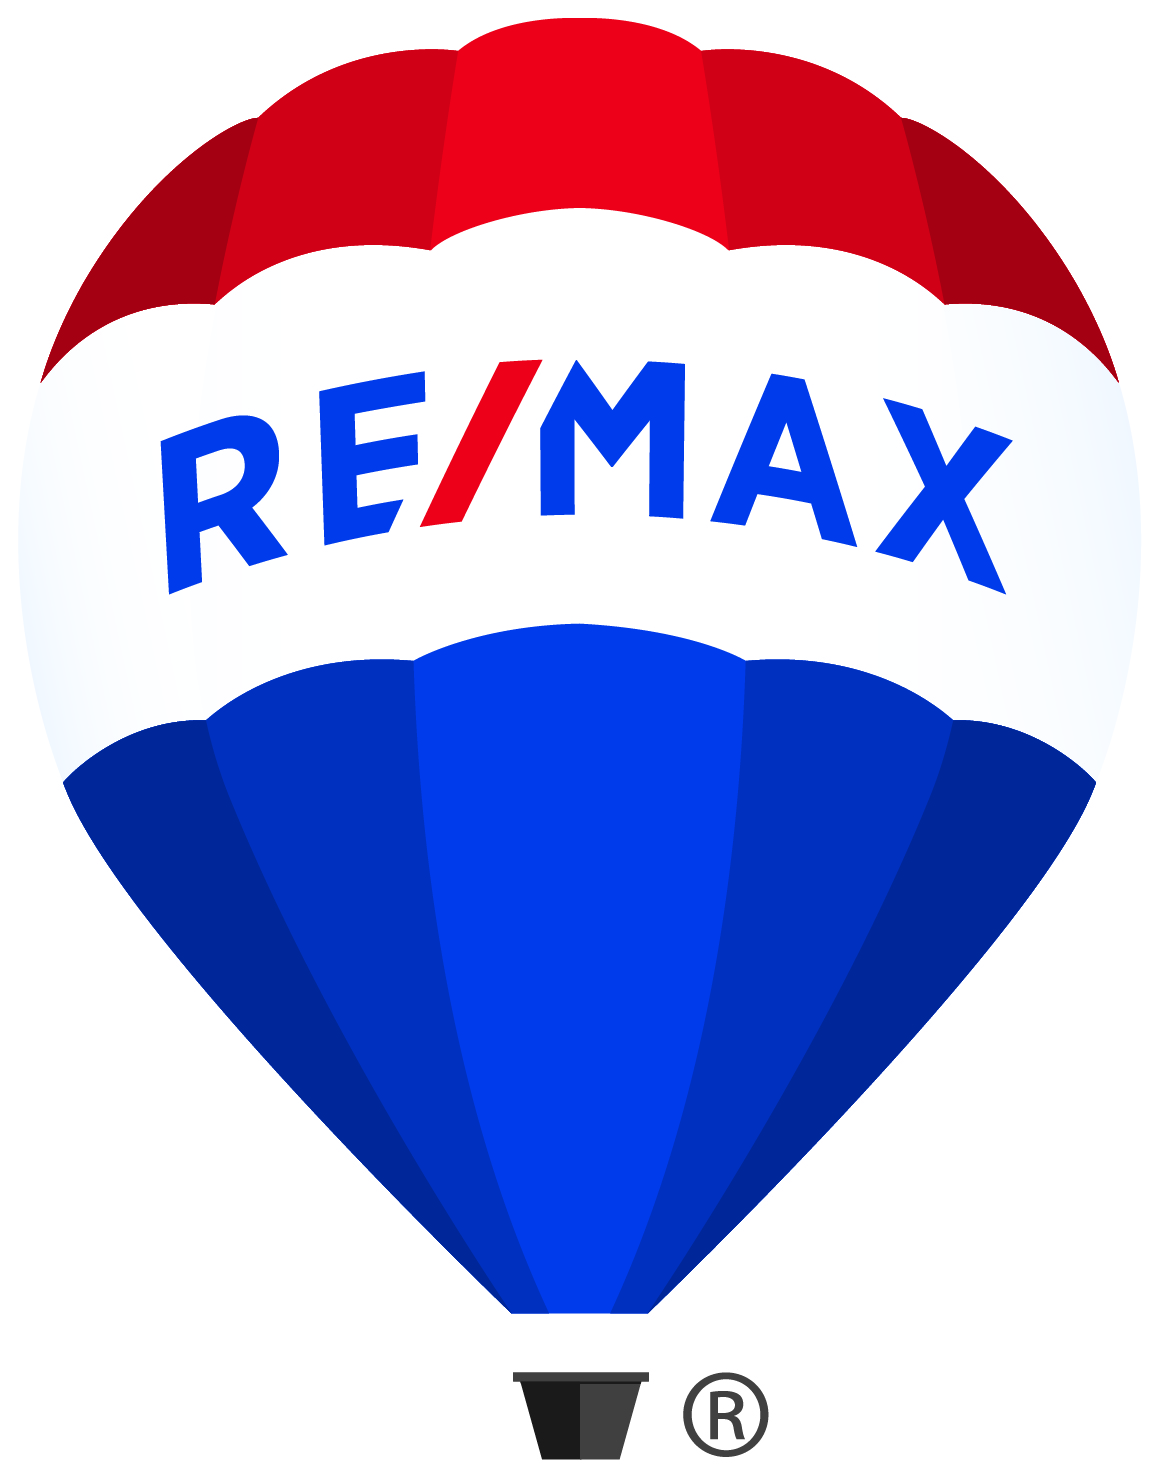 REMAX_mastrBalloon_CMYK_R.jpg